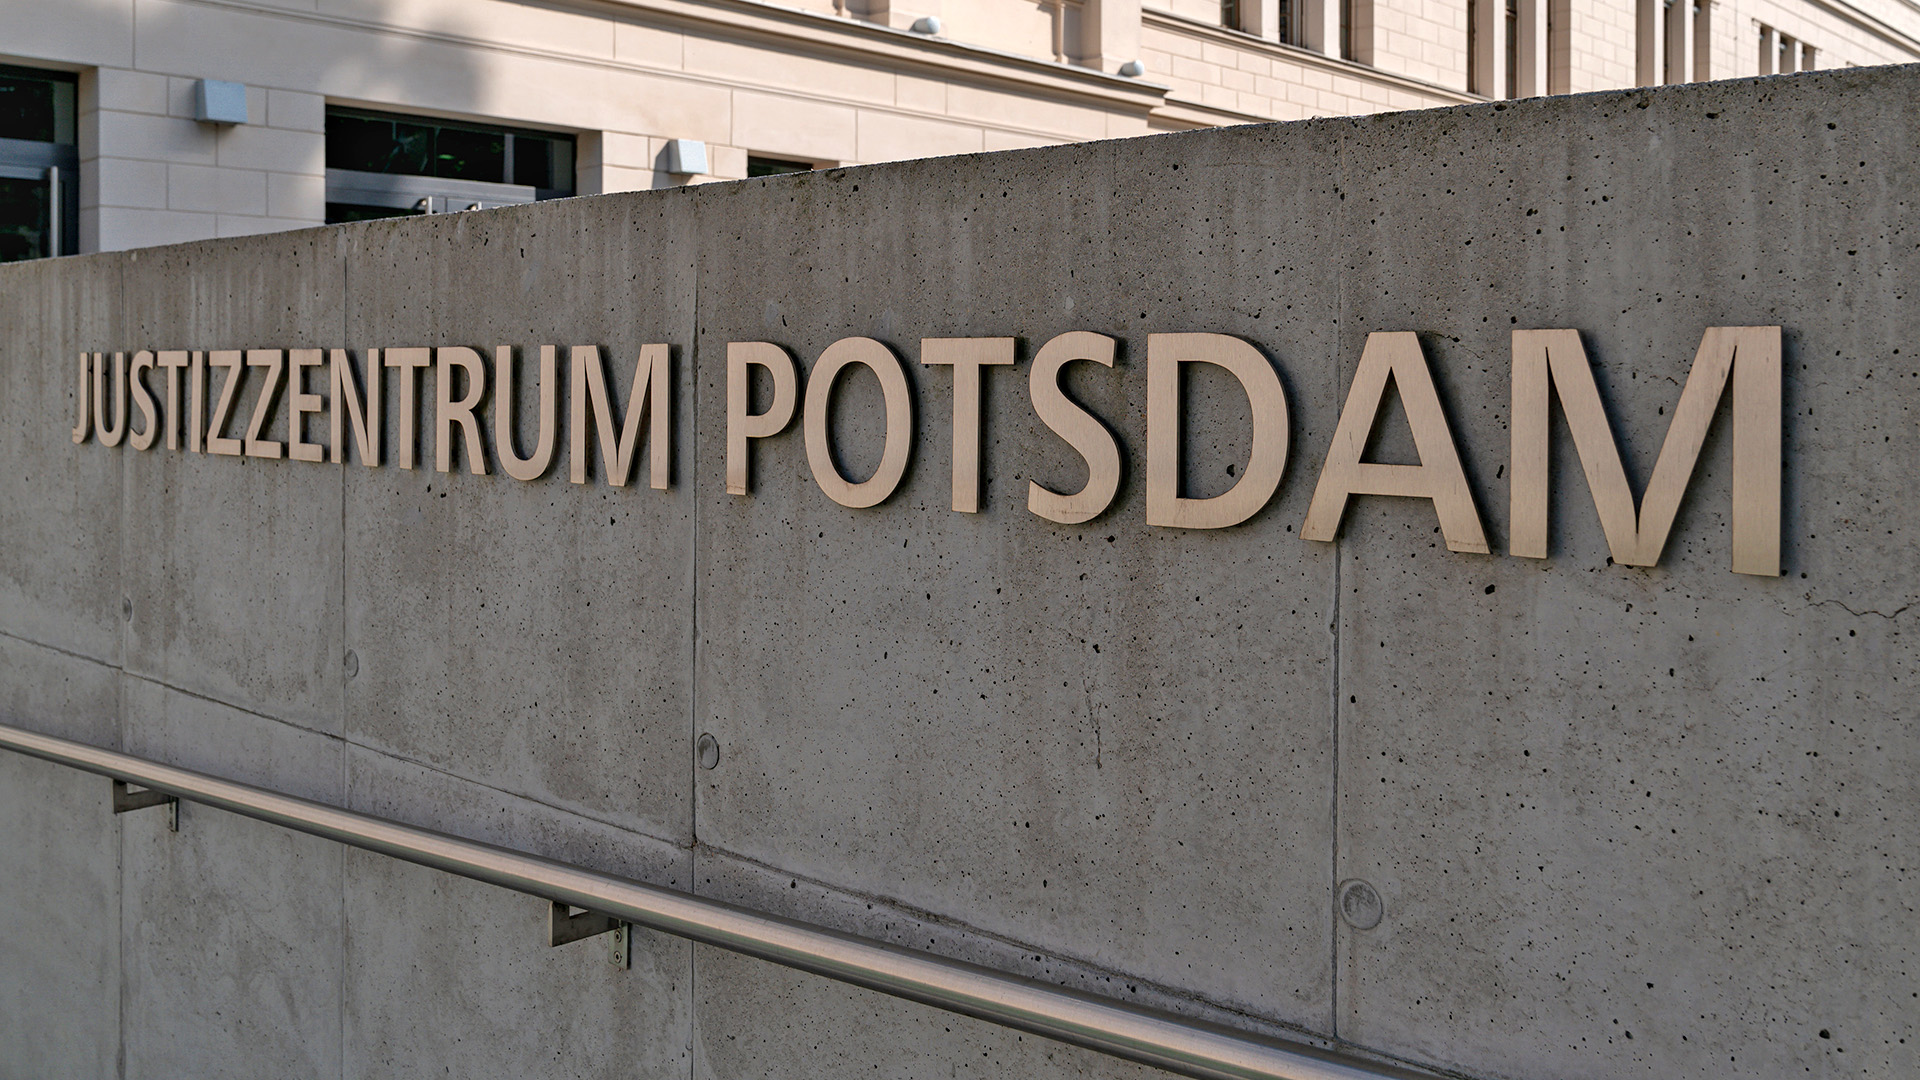 Potsdam, das Justizzentrum Potsdam in der ehemaligen Unteroffiziersschule mit Sitz der Potsdamer Staatsanwaltschaft, aufgenommen am 17.08.2020. (Quelle: Picture Alliance/Dirk Pagels)